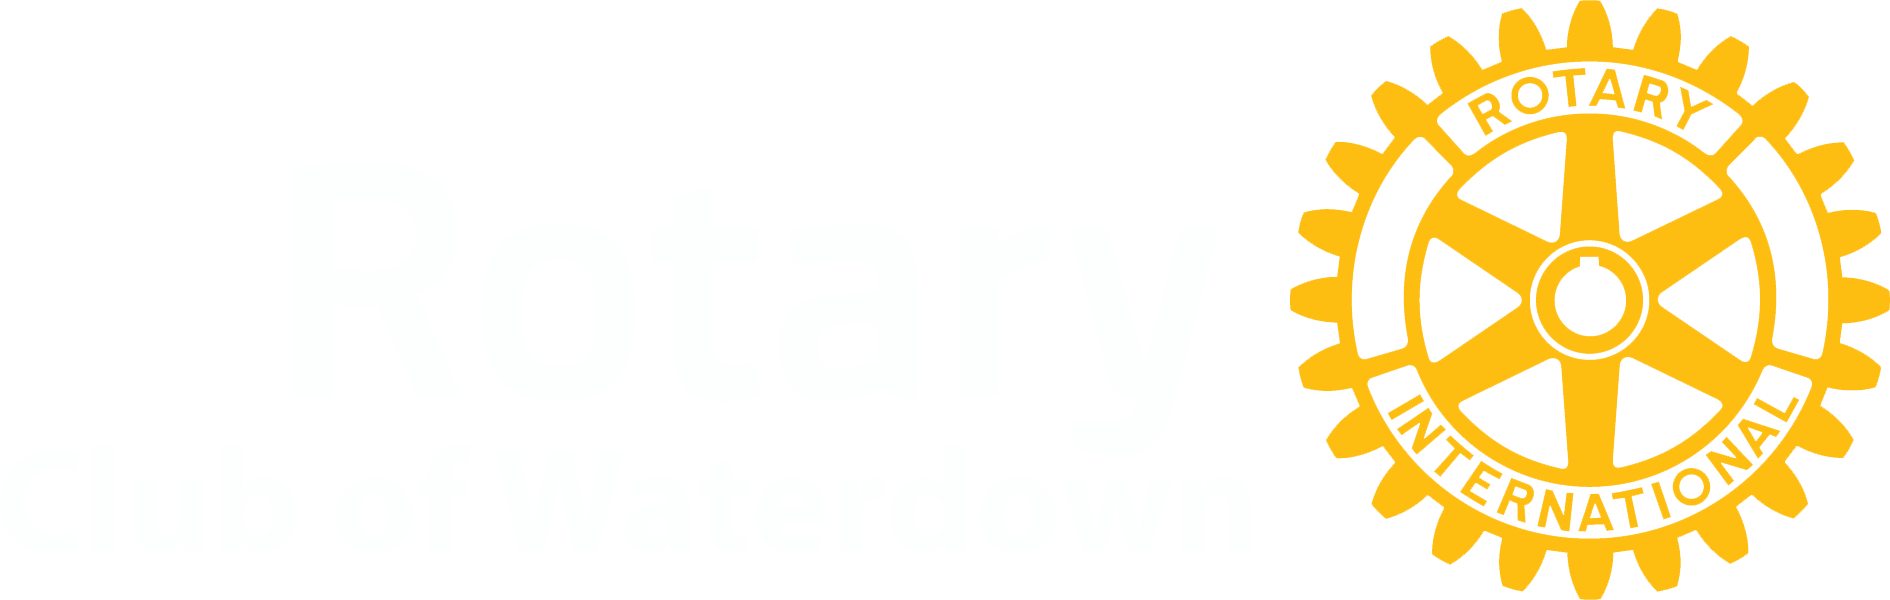 Waterdown logo